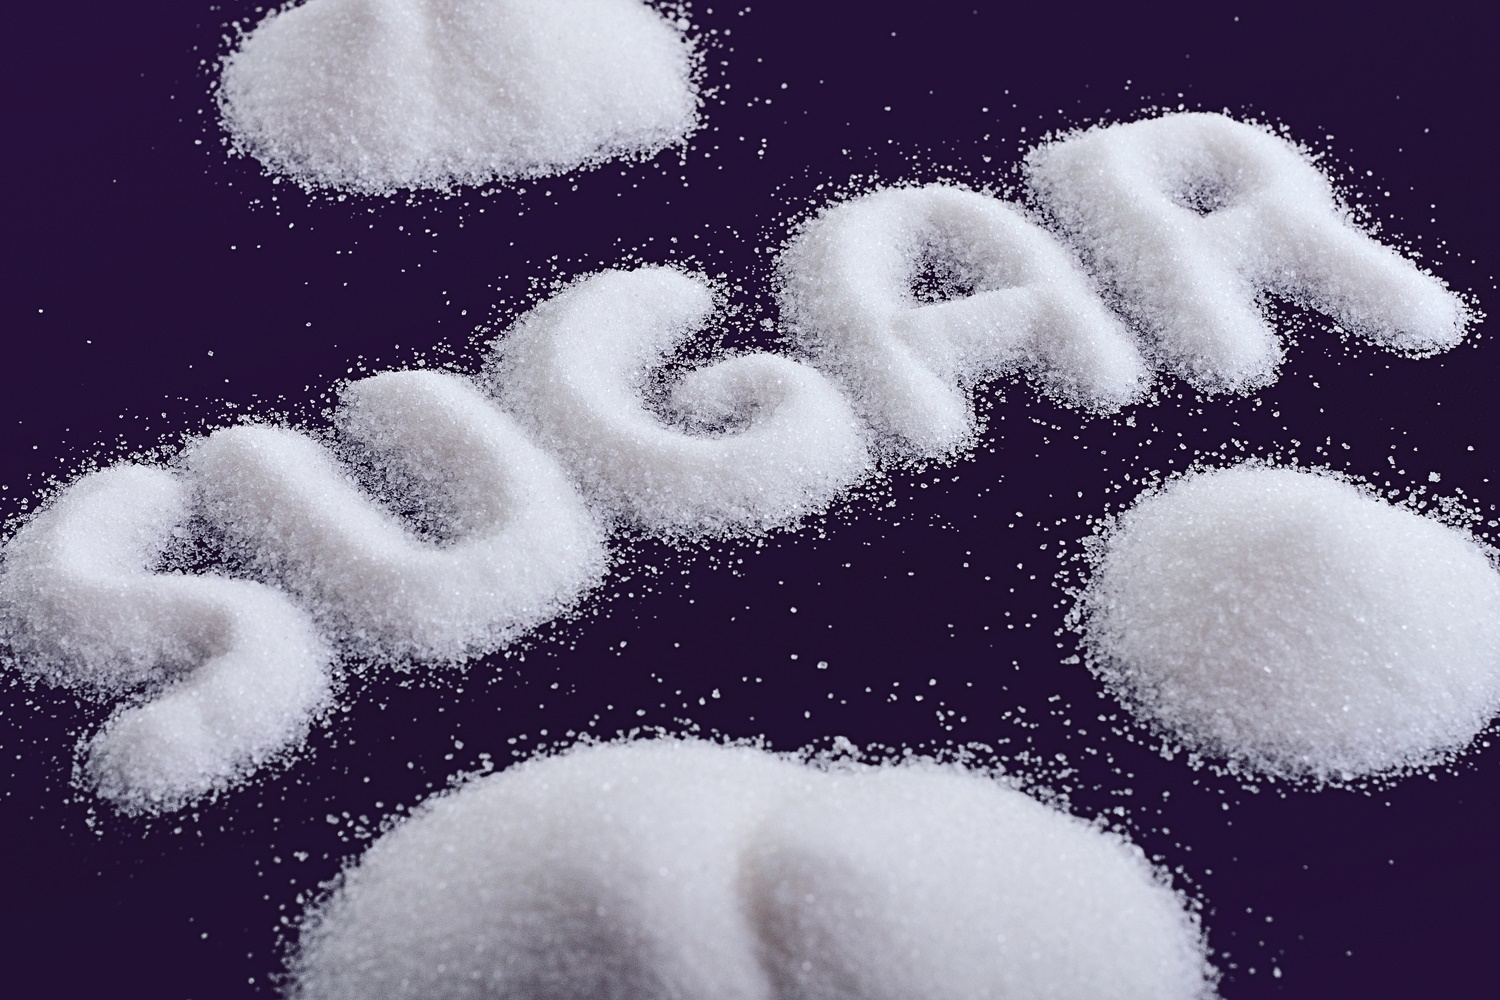 سالانه 2 میلیون و 100 هزار تن شکر در کشور مصرف می شود!